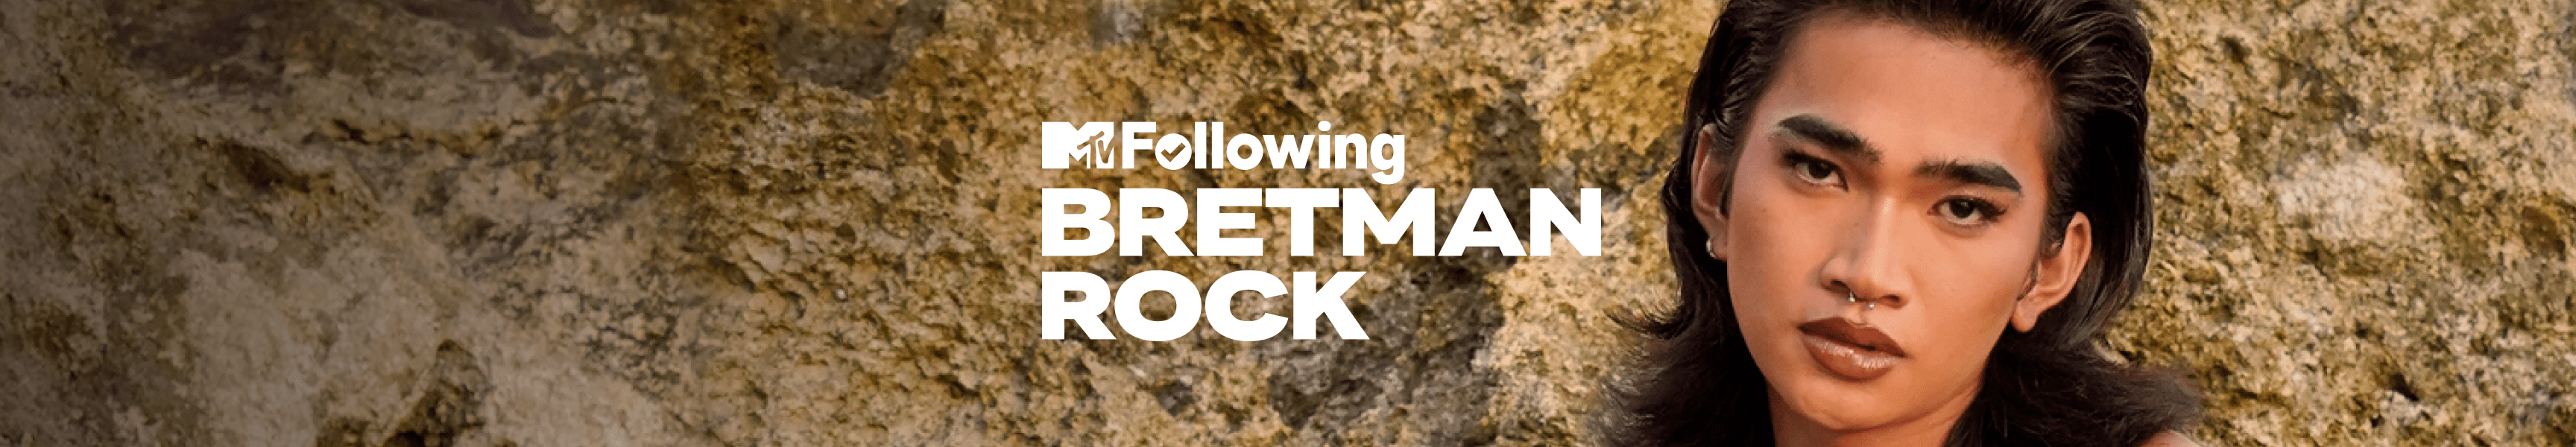 Roca Bretman